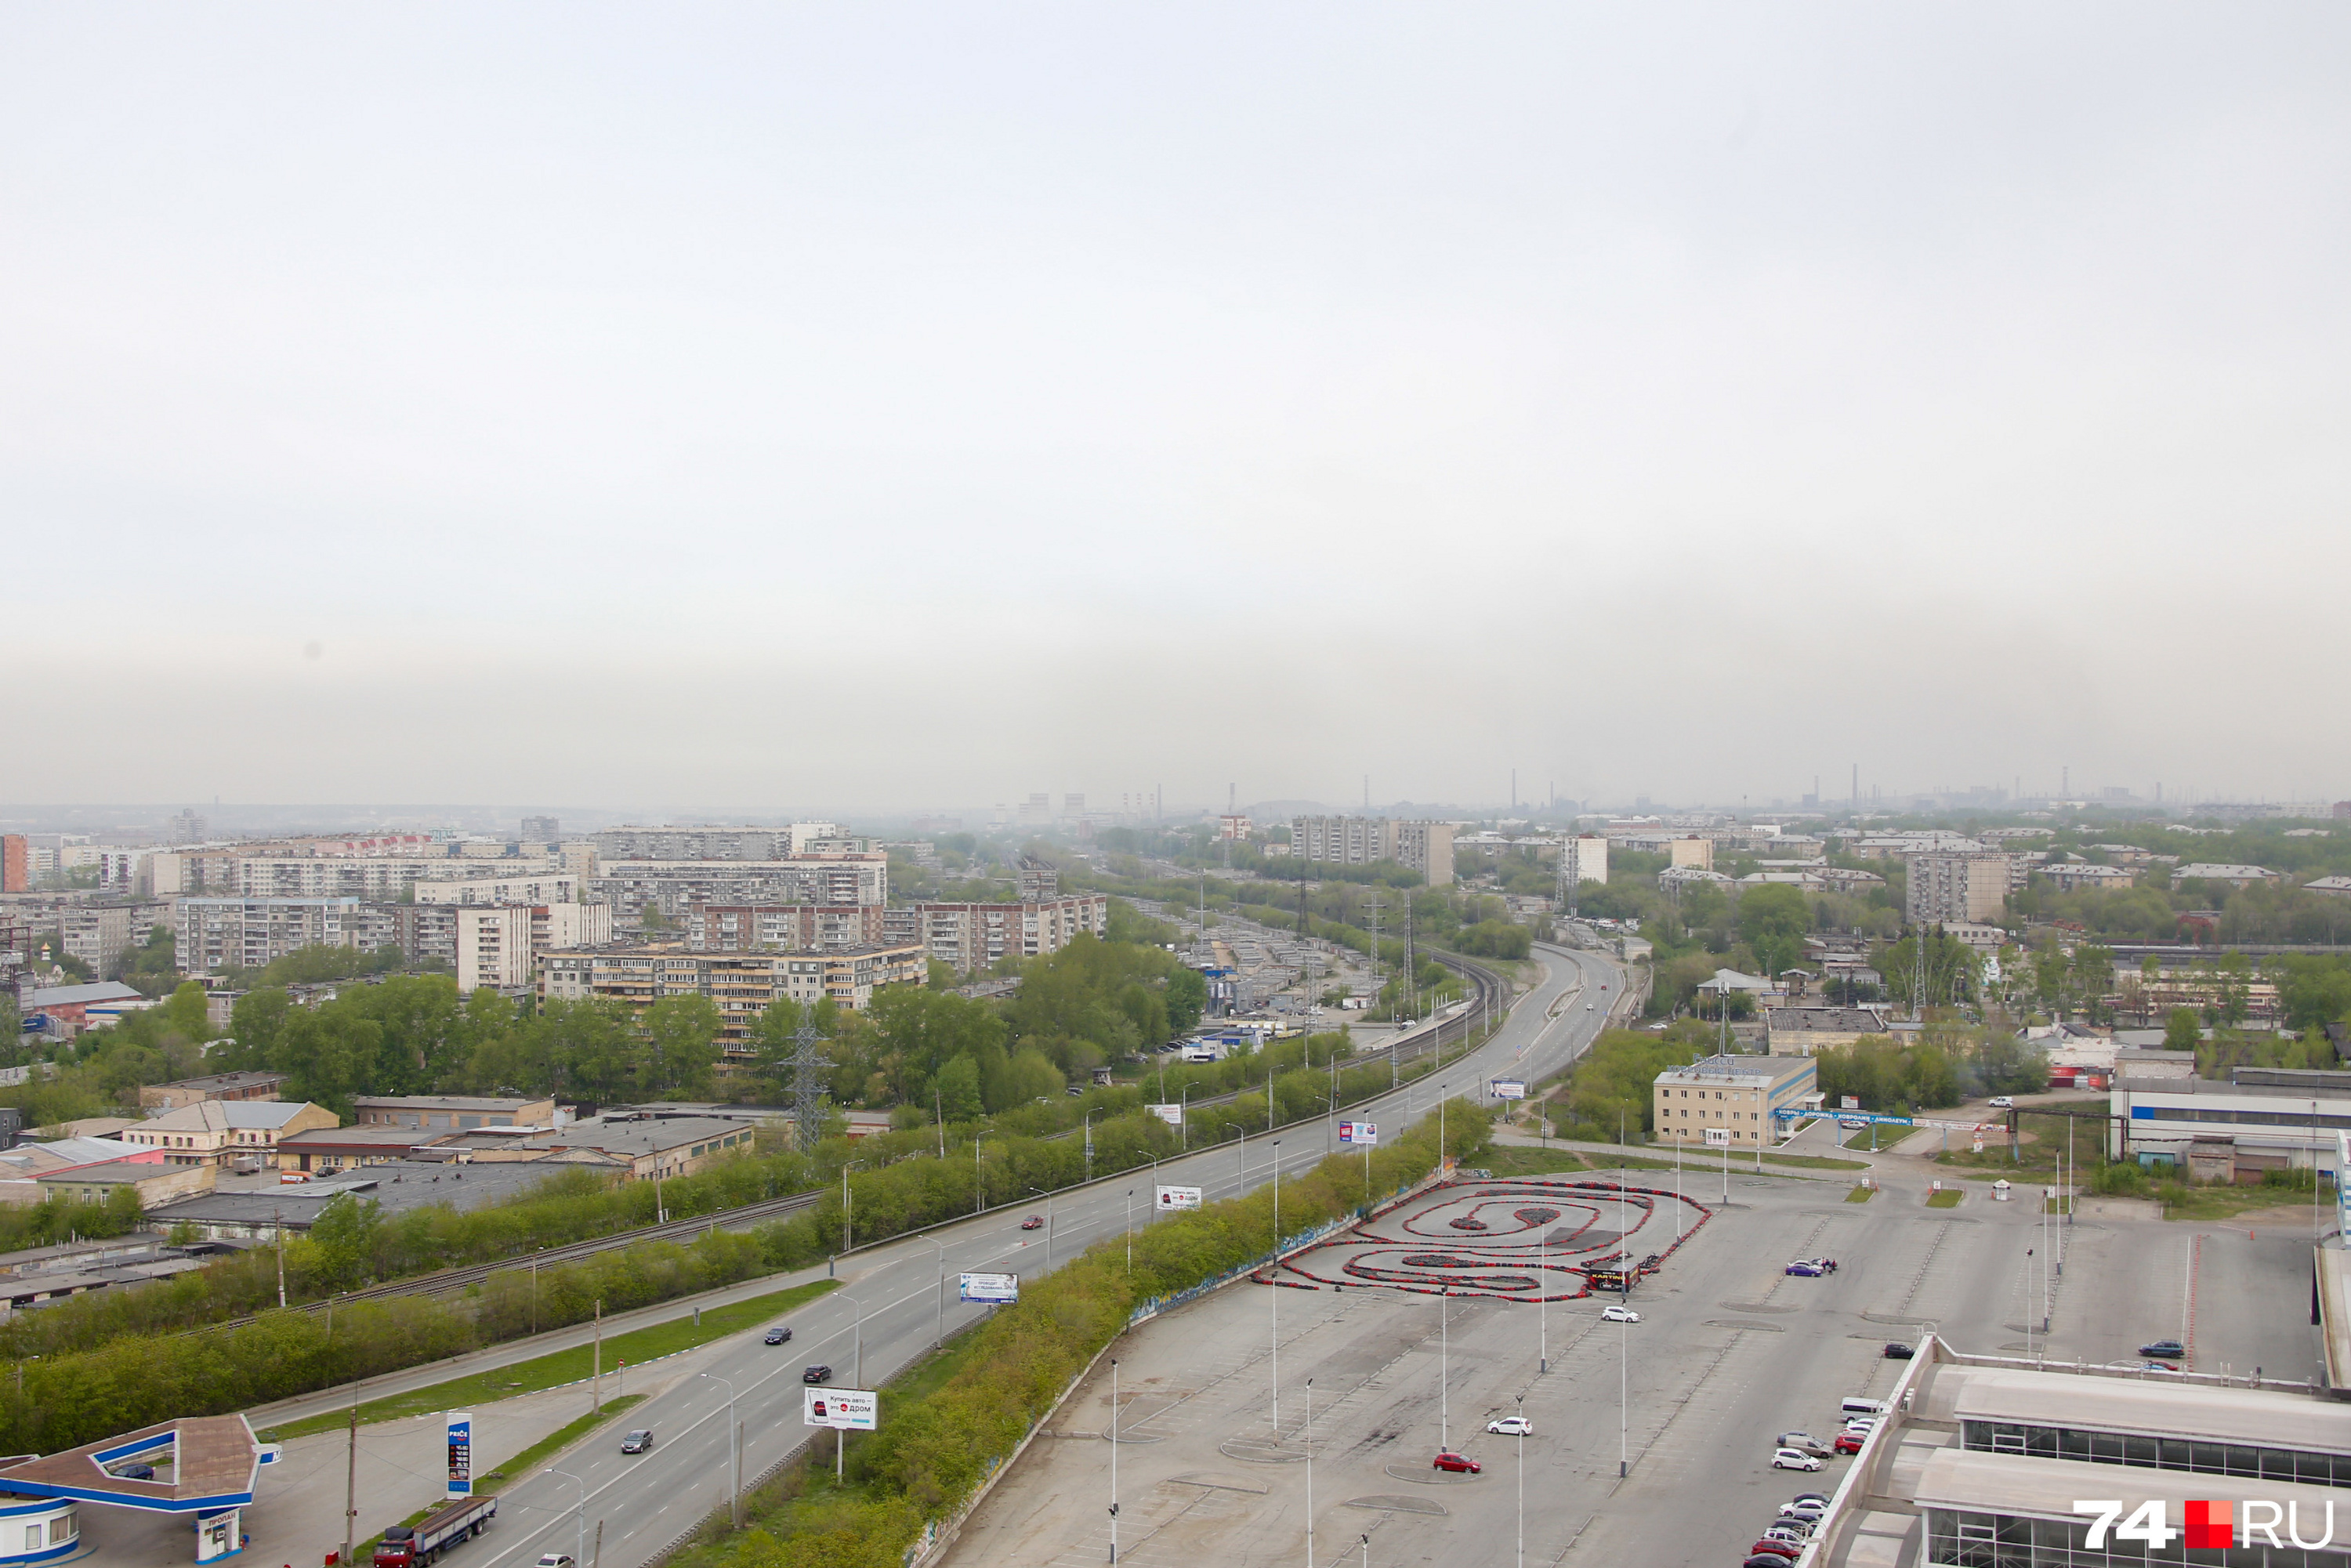 Серая полоса на горизонте — верный признак НМУ в Челябинске 